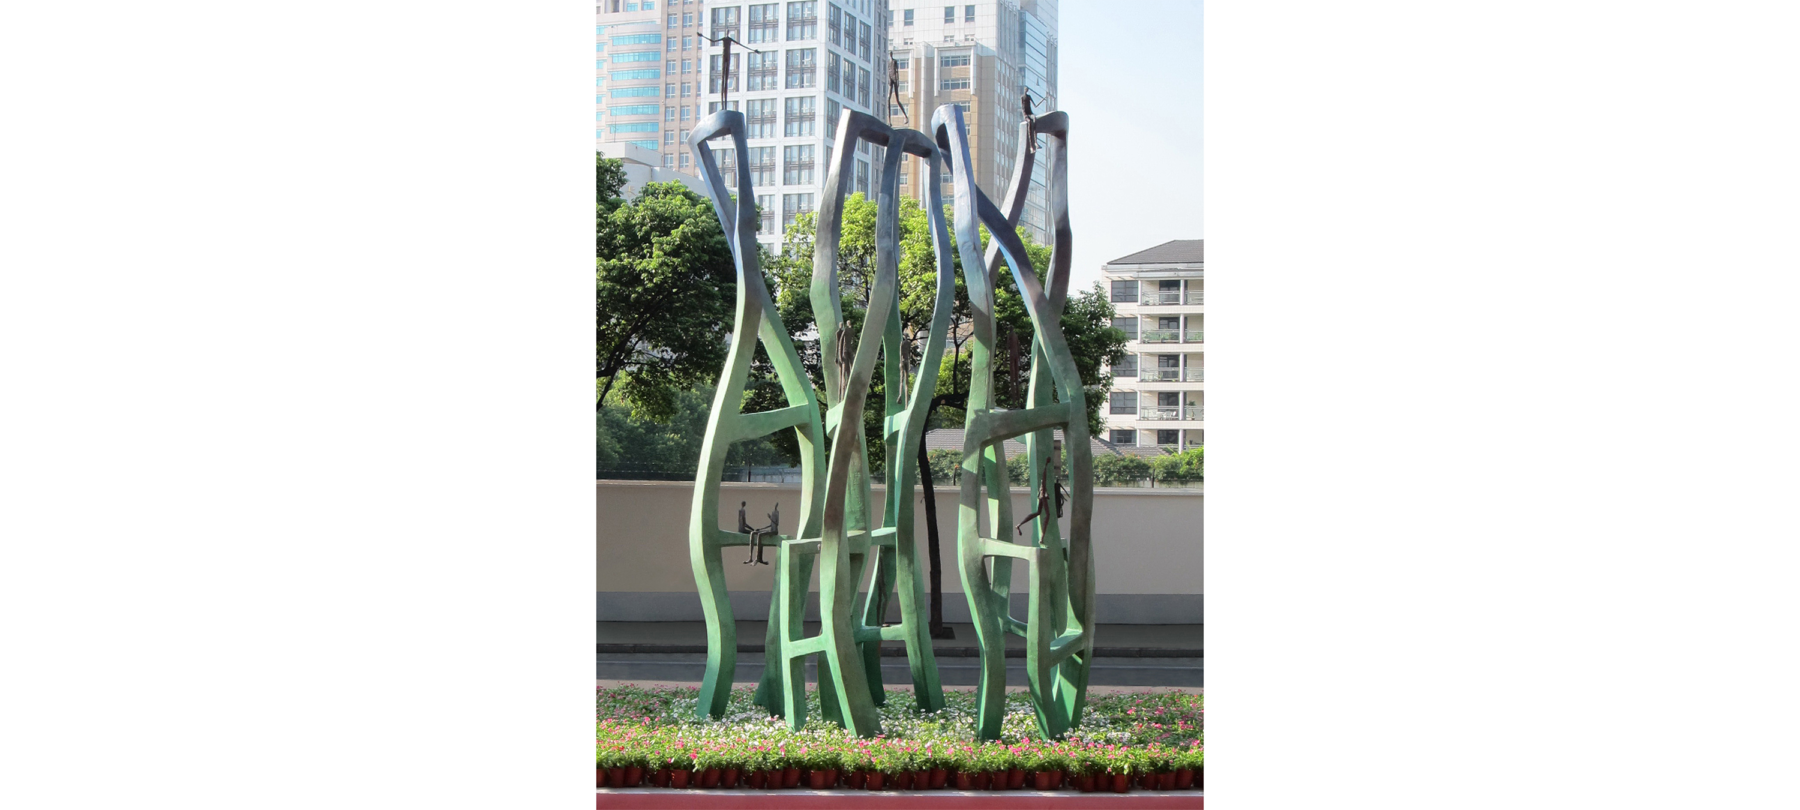 Jing’An Sculpture Park Project pour la sculpteure française Val - Valérie Goutard - à Shanghai avec Sculptureval